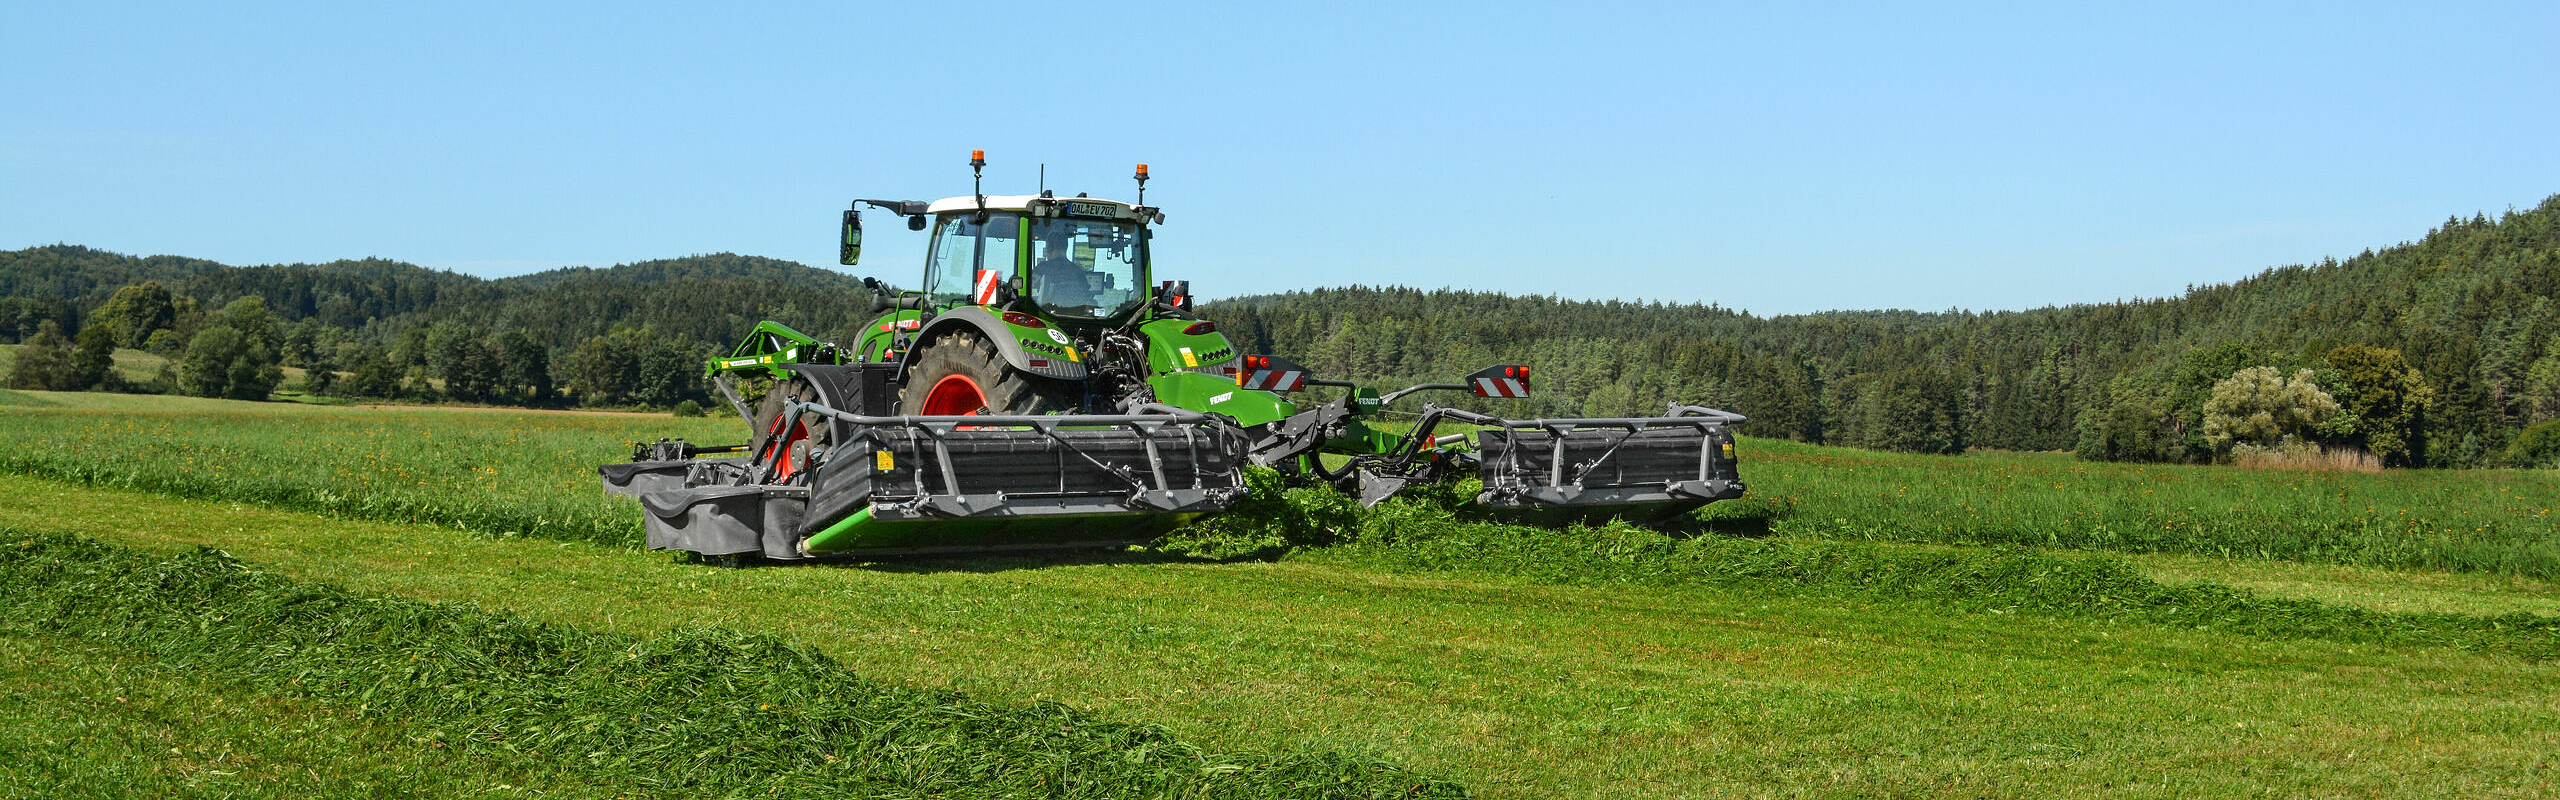 Tractor Fendt en el campo verde durante la cosecha con Fendt Slicer